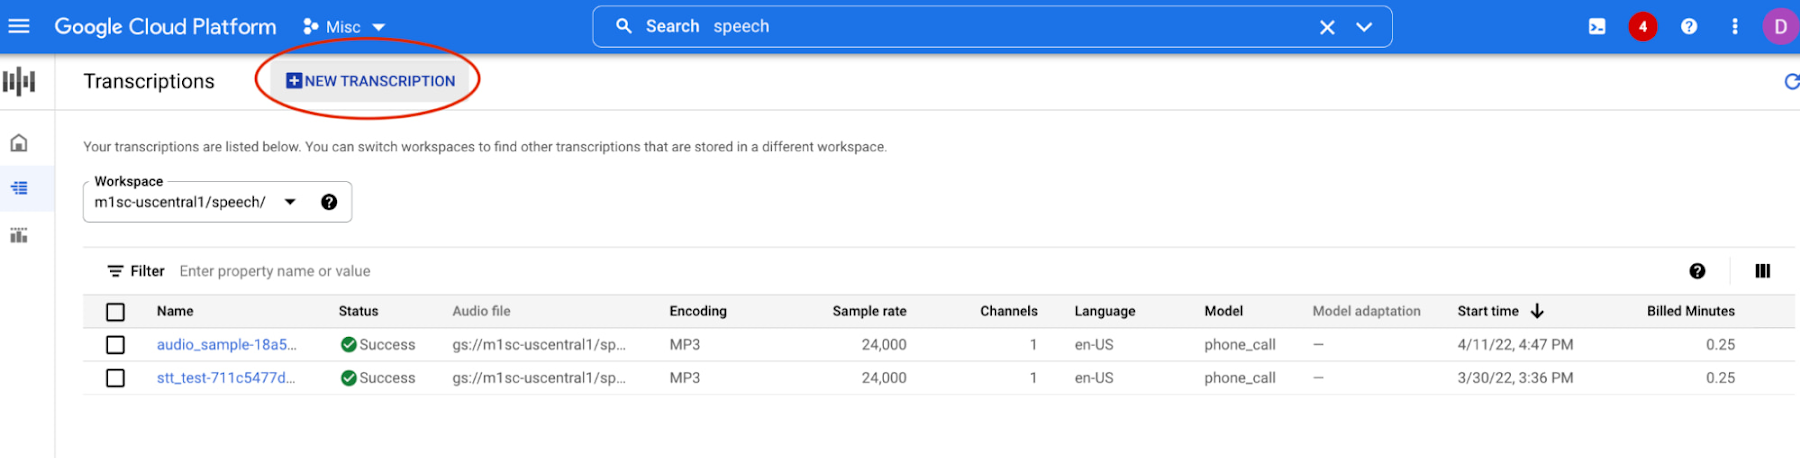 3 Speech on Google Cloud.jpg